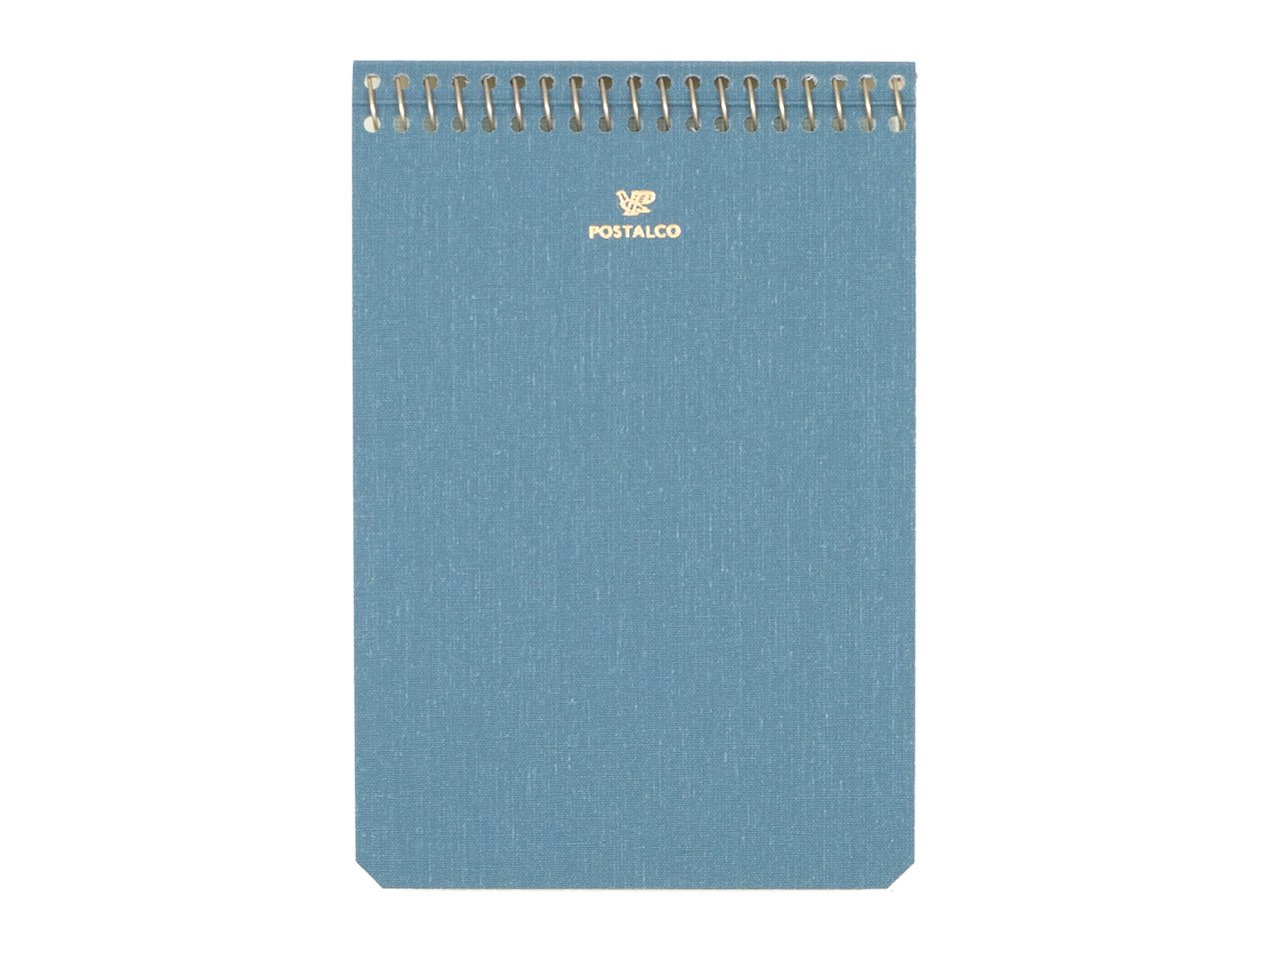 POSTALCO Notebook A6 Light Blue